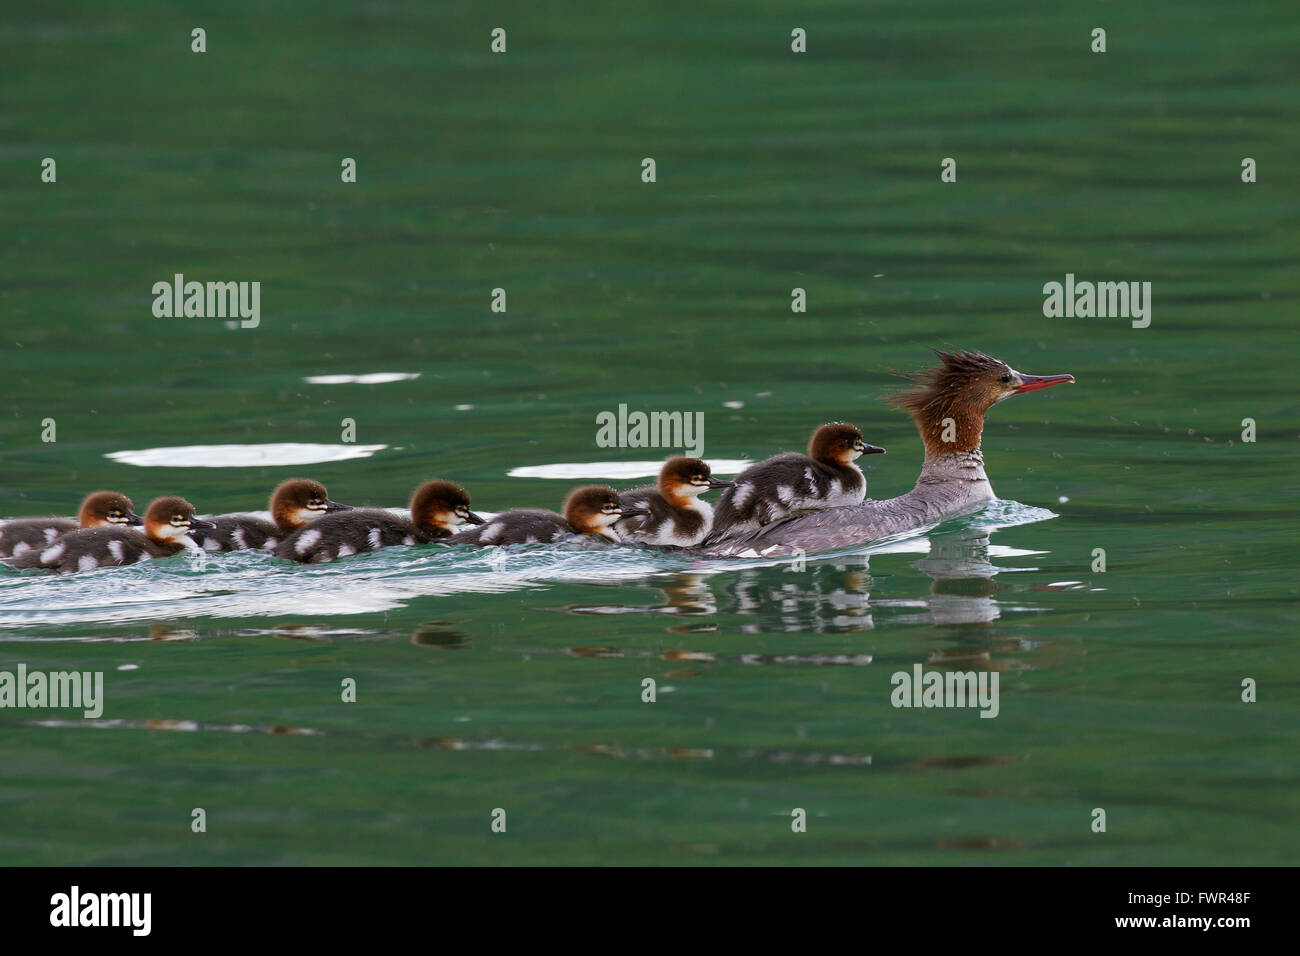 Common merganser / goosander (Mergus merganser) female swimming in lake with chicks on her back, Banff NP, Alberta, Canada Stock Photo